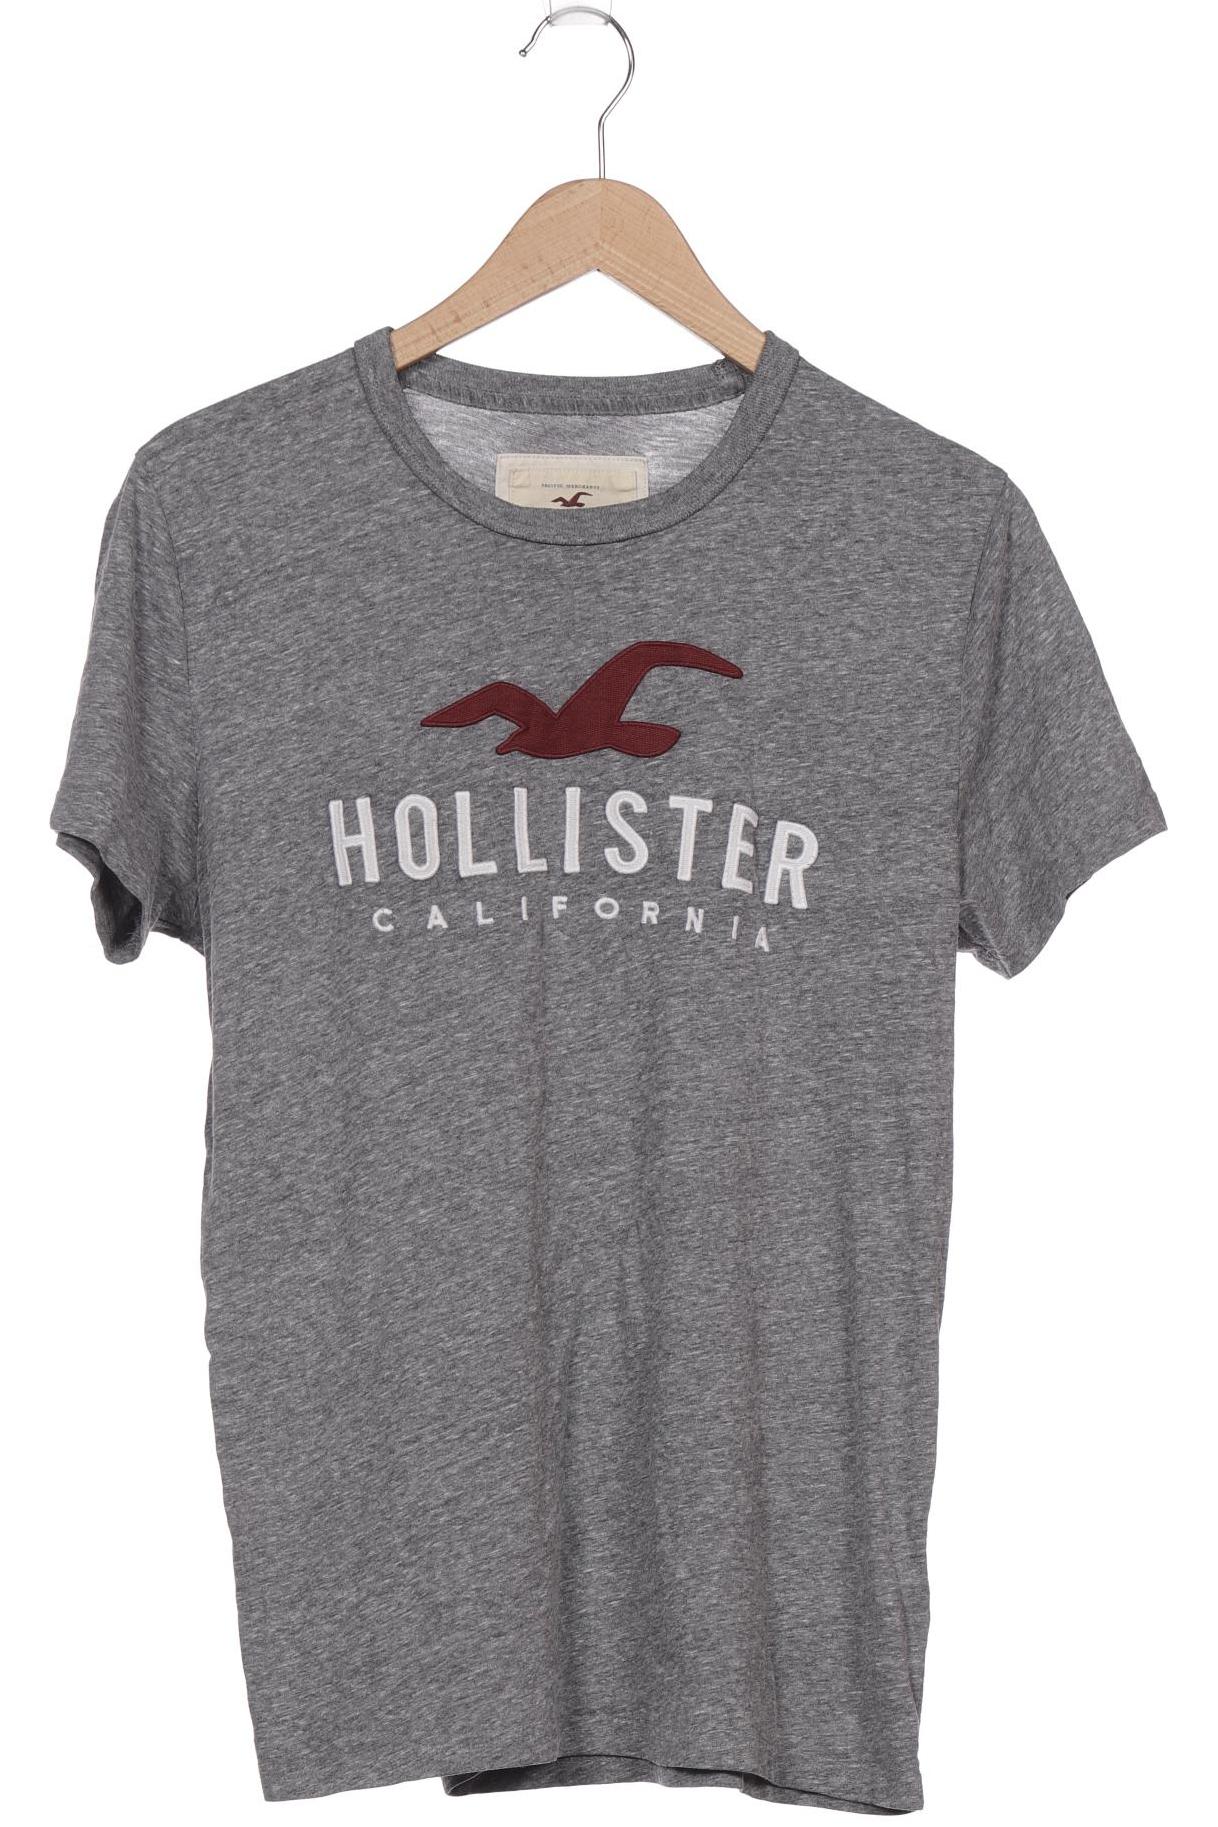 Hollister Herren T-Shirt, grau von Hollister